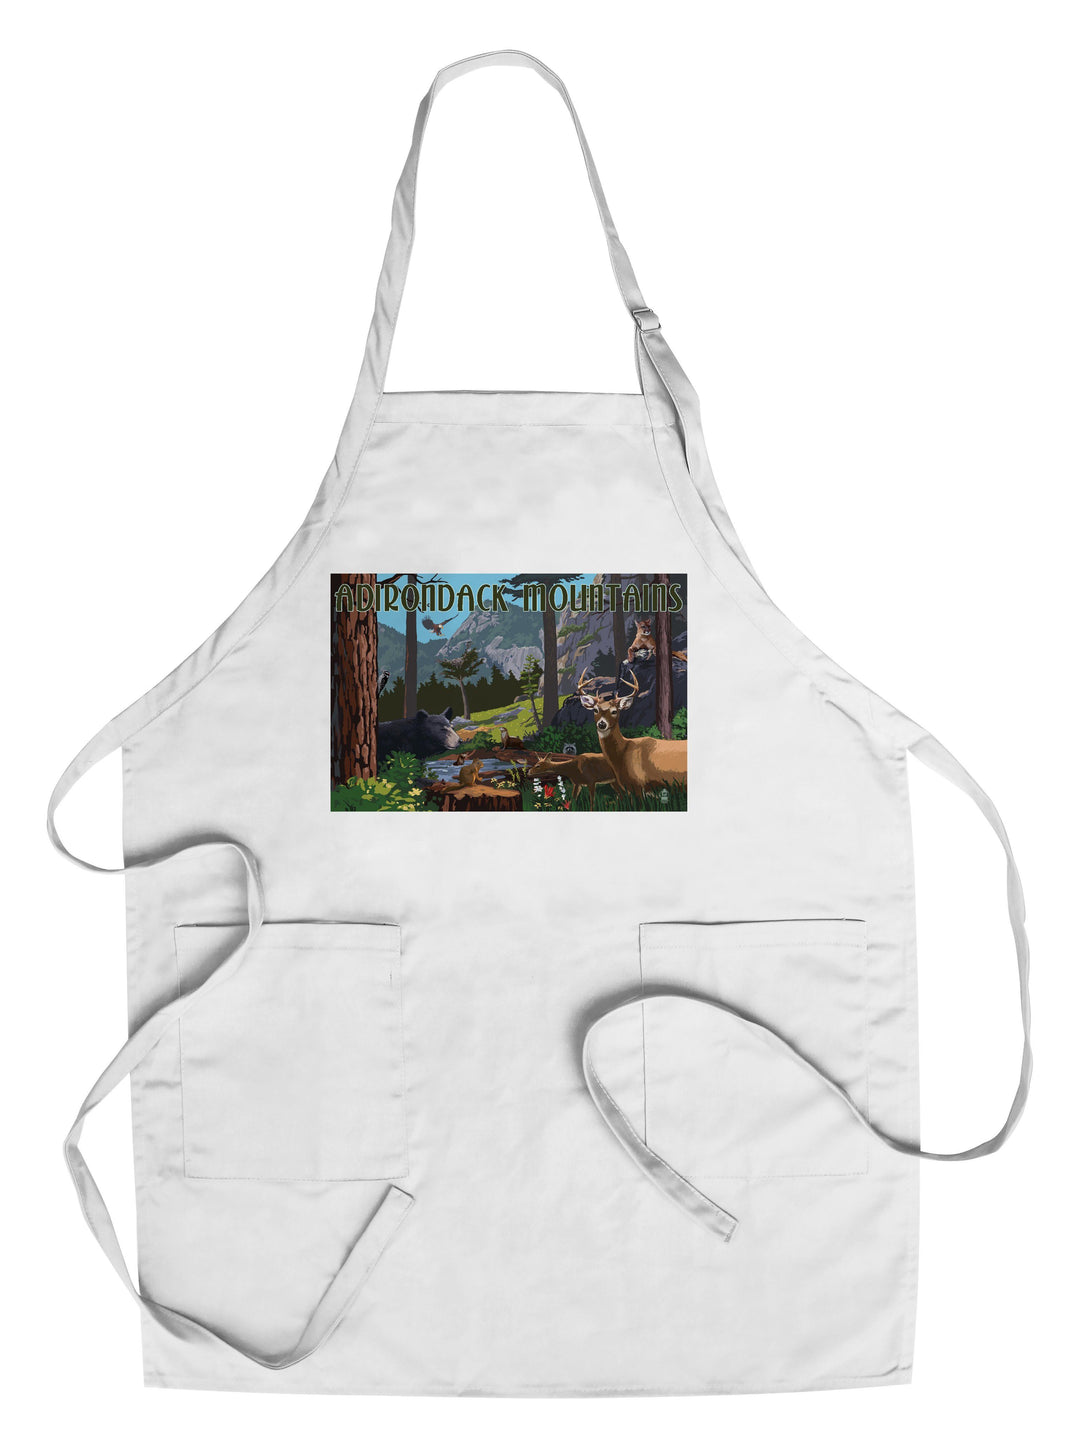 Adirondack Mountains, New York, Wildlife Utopia, Lantern Press Artwork, Towels and Aprons Kitchen Lantern Press Chef's Apron 